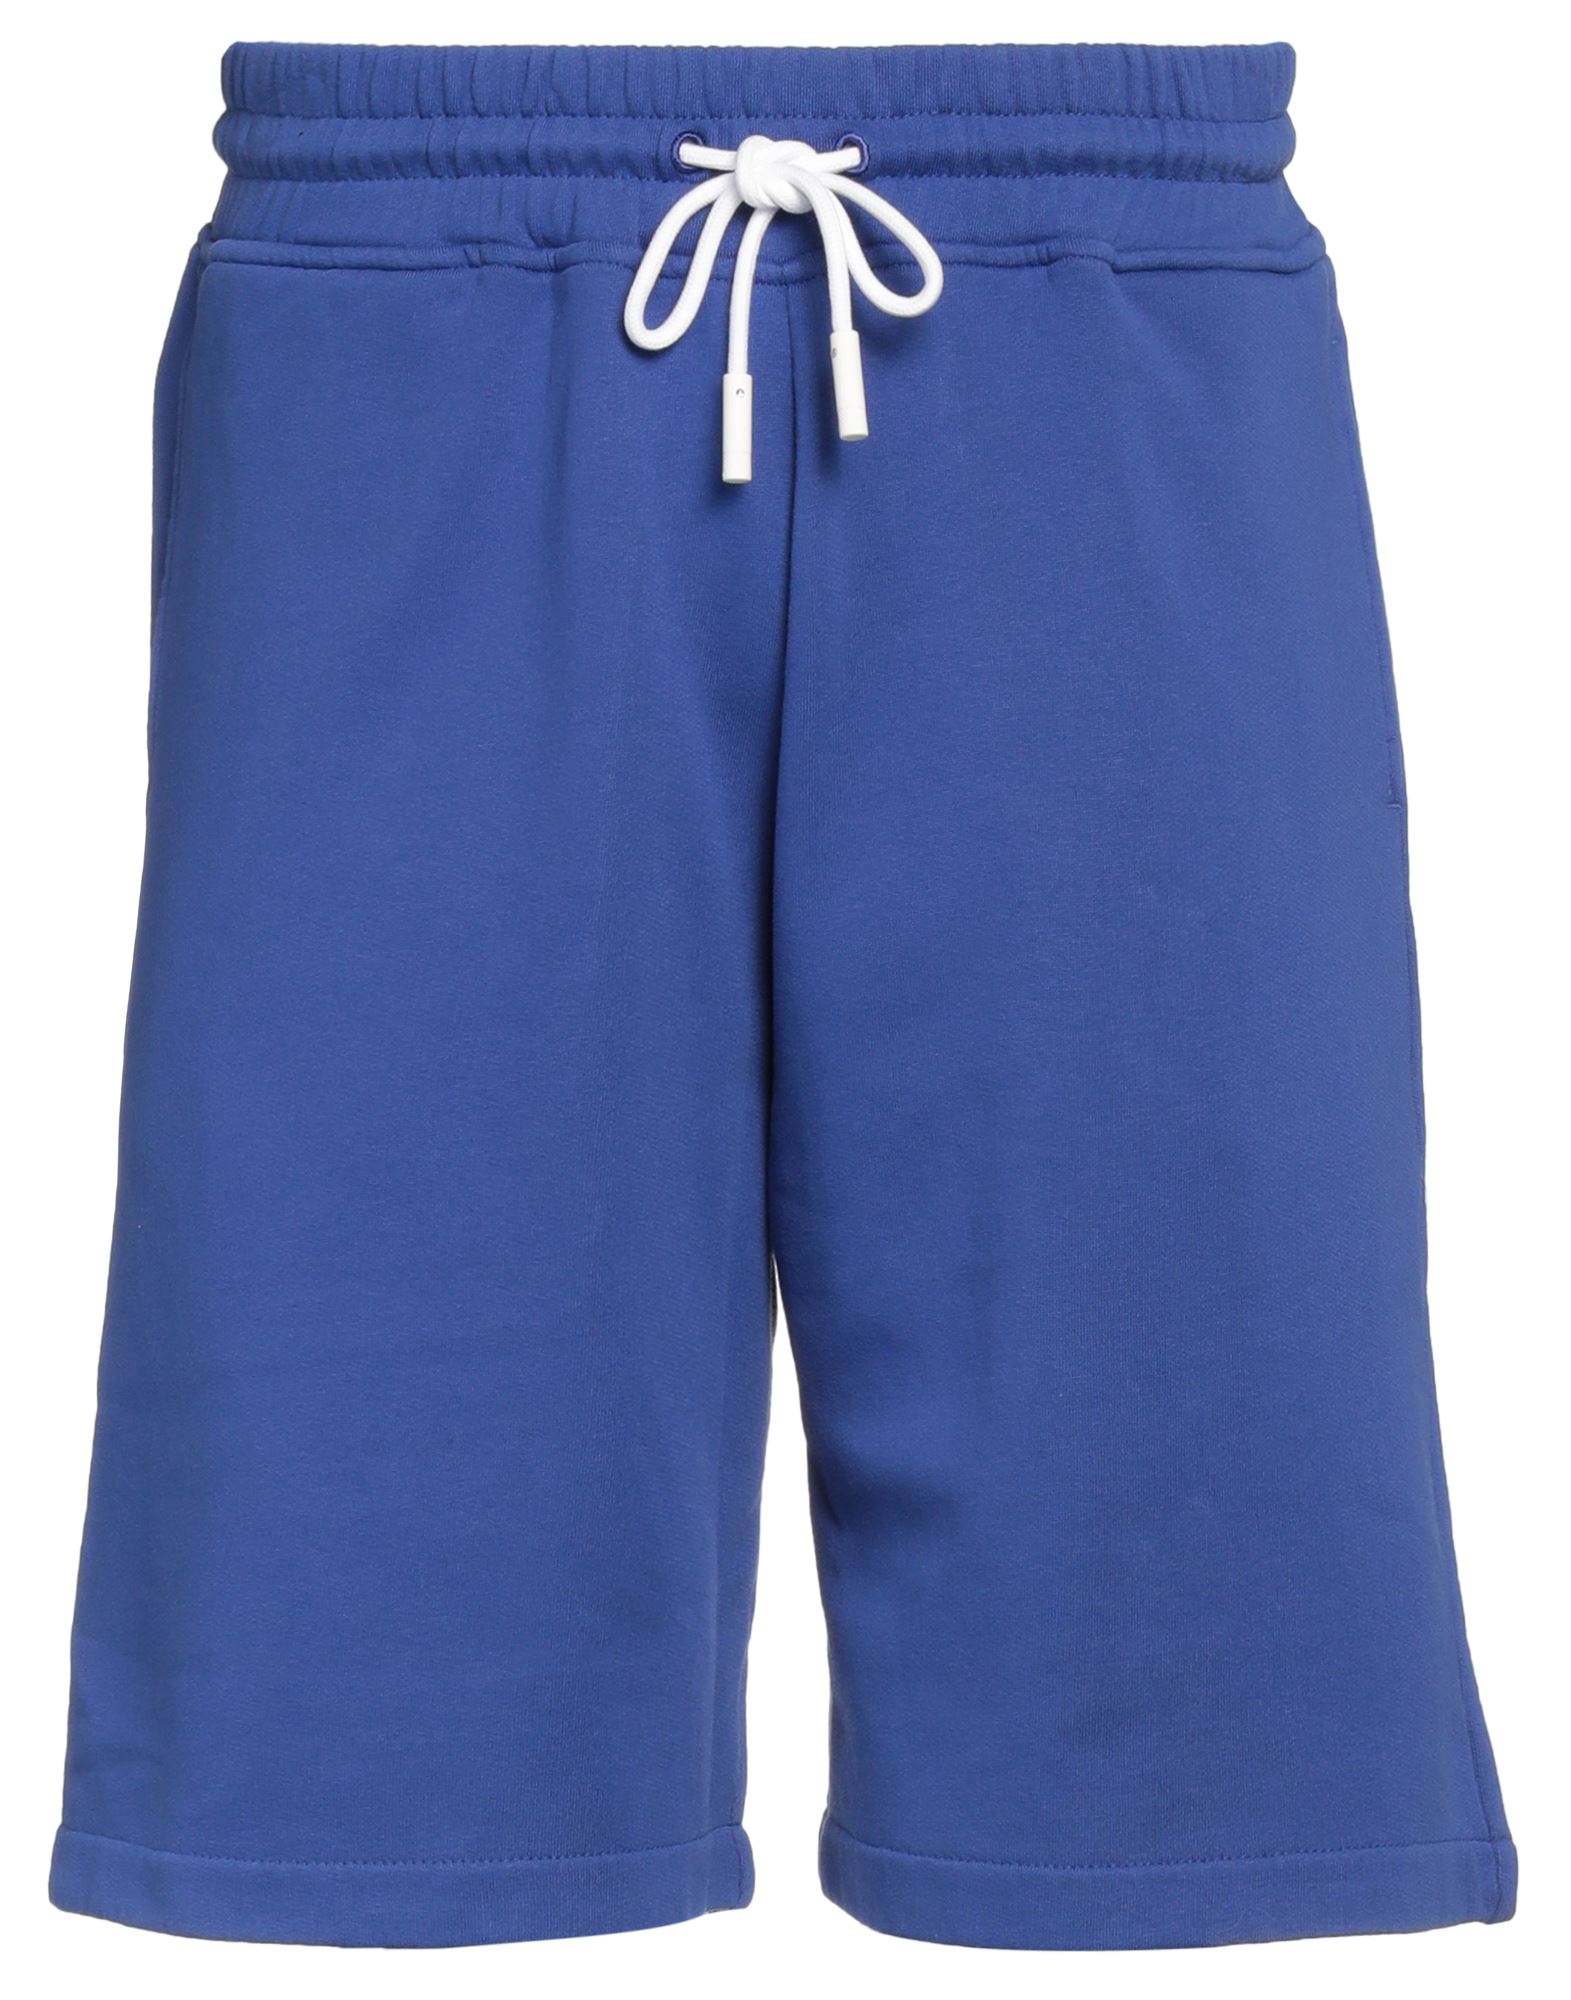 Marcelo Burlon County Of Milan Marcelo Burlon Man Shorts & Bermuda Shorts Bright Blue Size Xl Cotton, Polyester